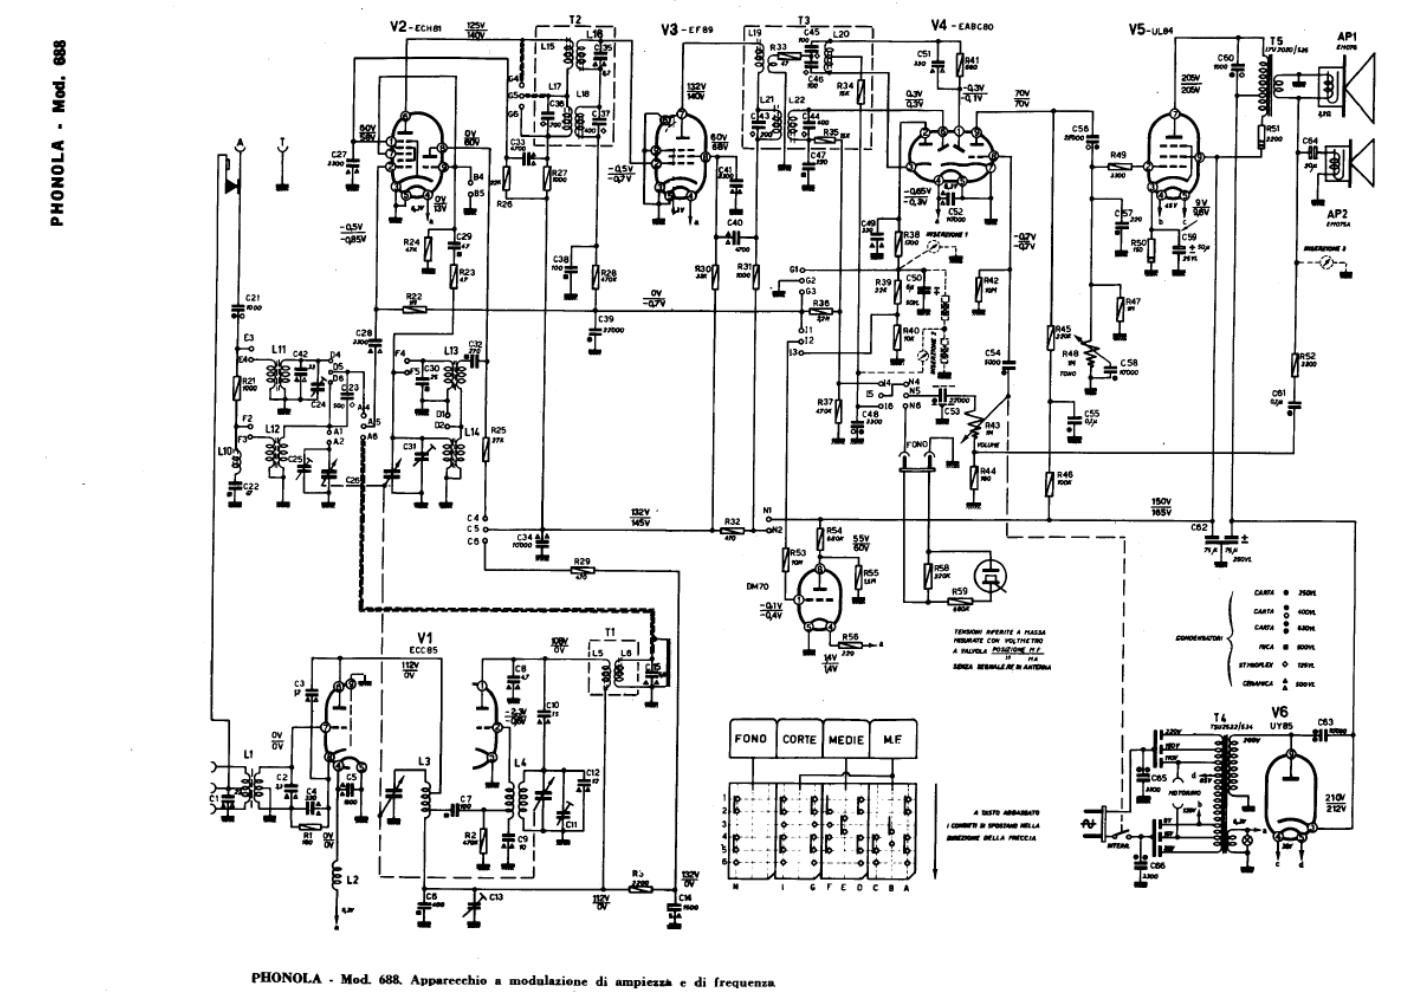 phonola 688 schematic